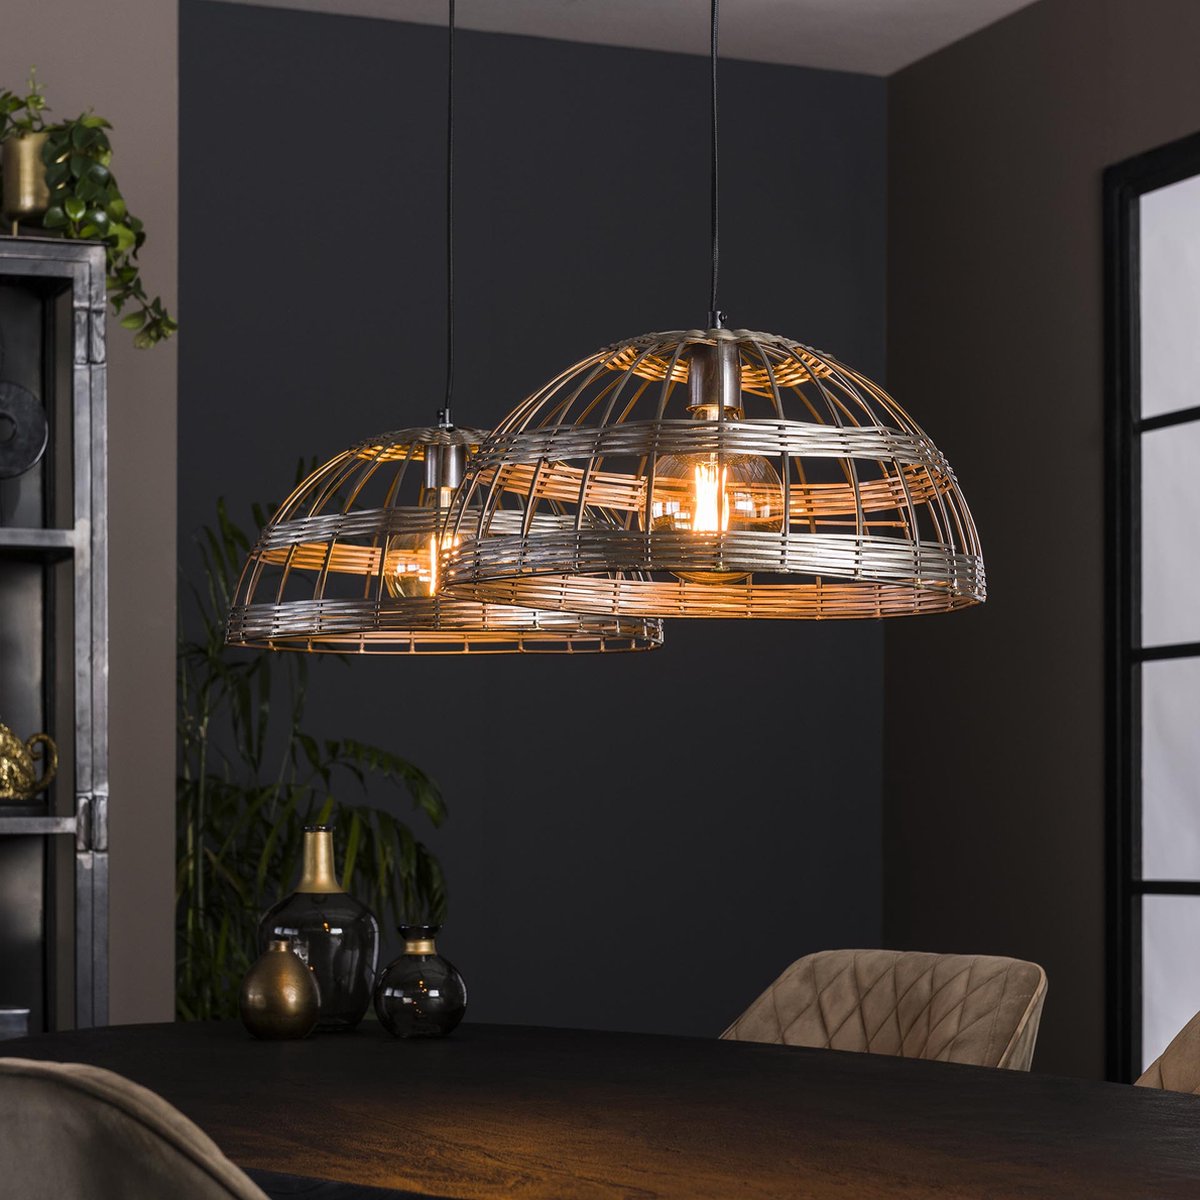 Hanglamp Metal Blinds | 2 lichts | zwart / grijs / staal | metaal | eetkamer / eettafel lamp | ⌀ 45 cm | in hoogte verstelbaar tot 150 cm | modern / sfeervol design